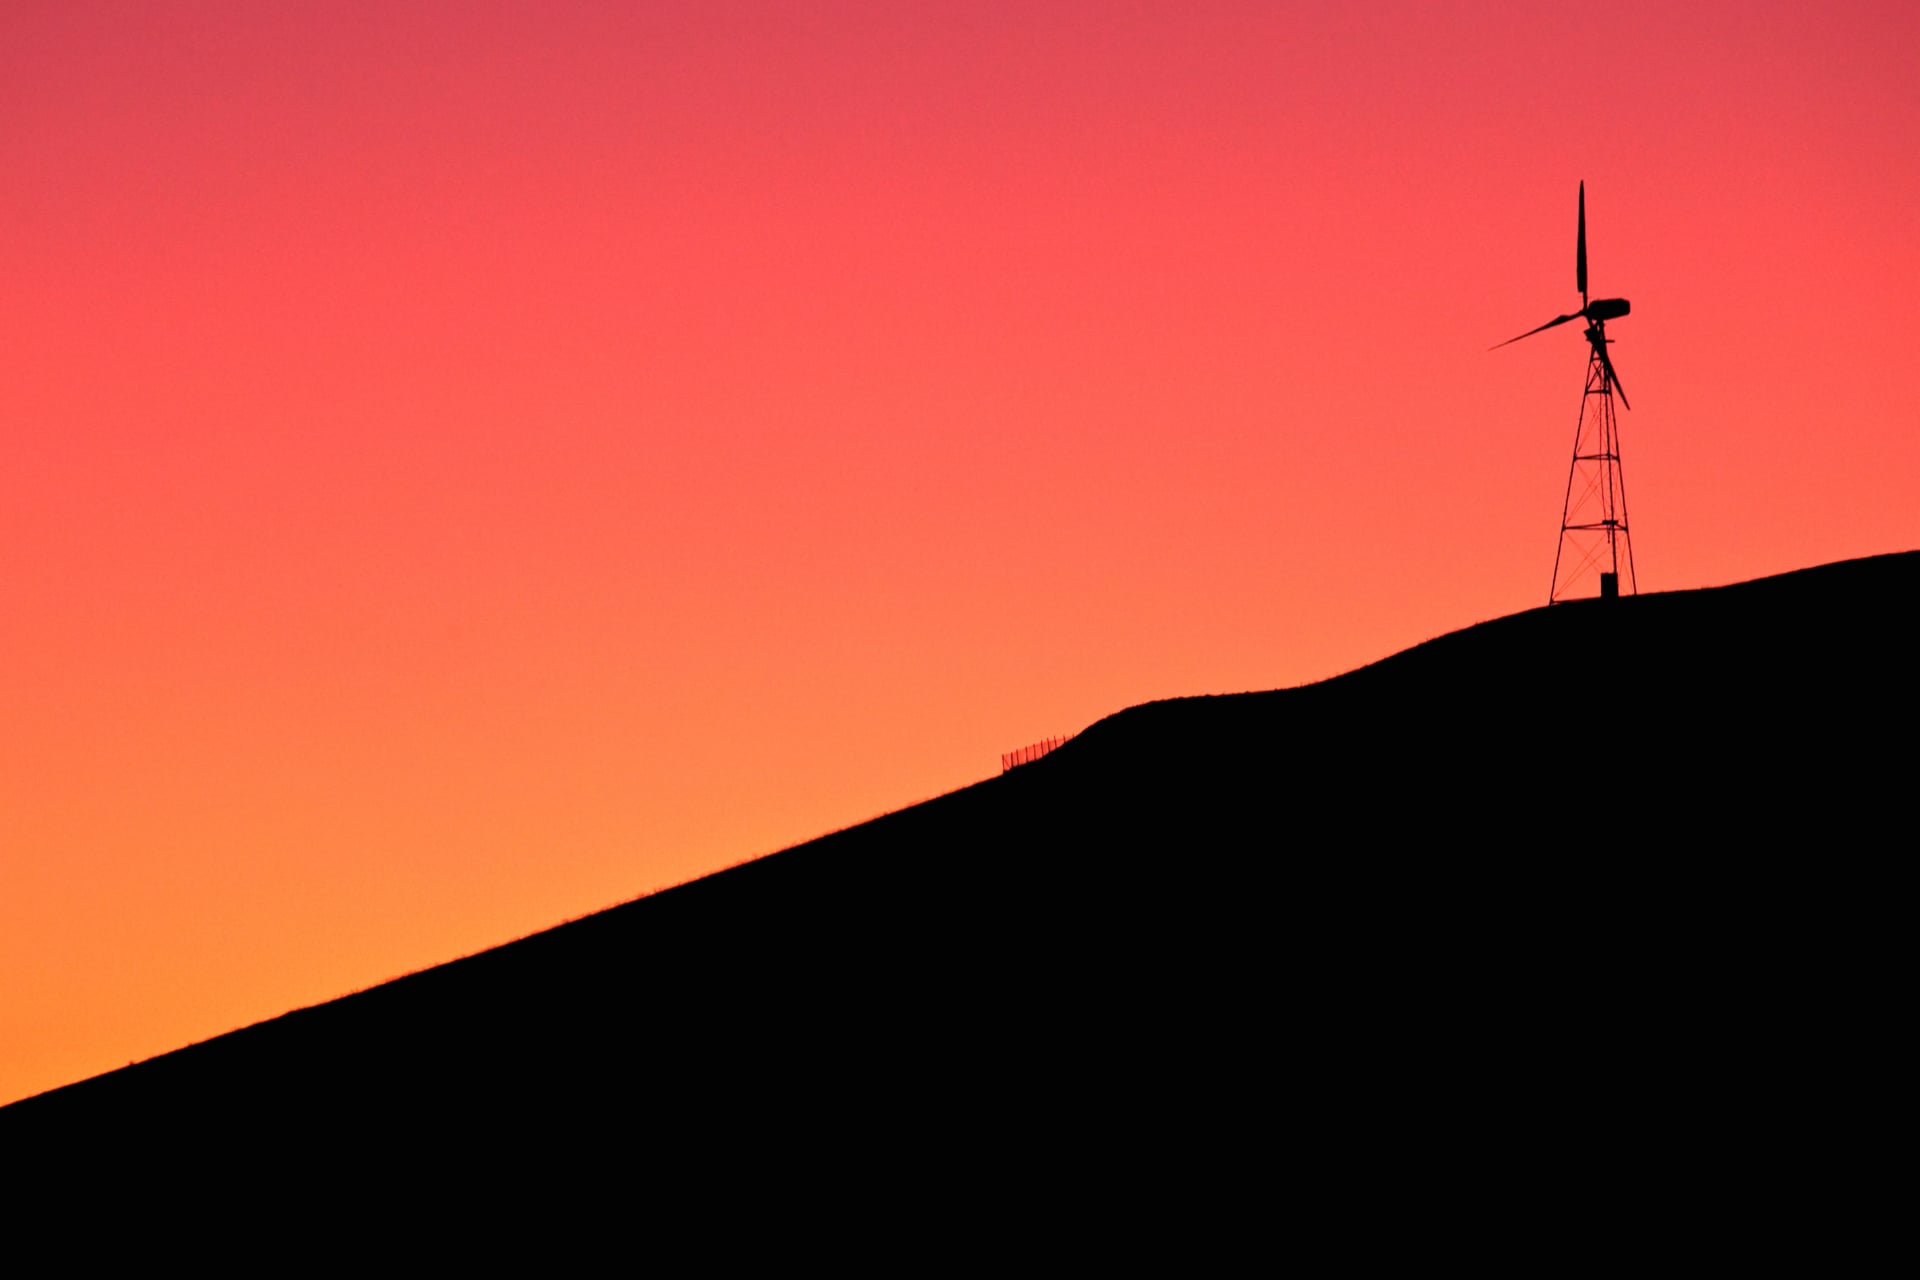 Digital Art Windmill at 1152 x 864 size wallpapers HD quality